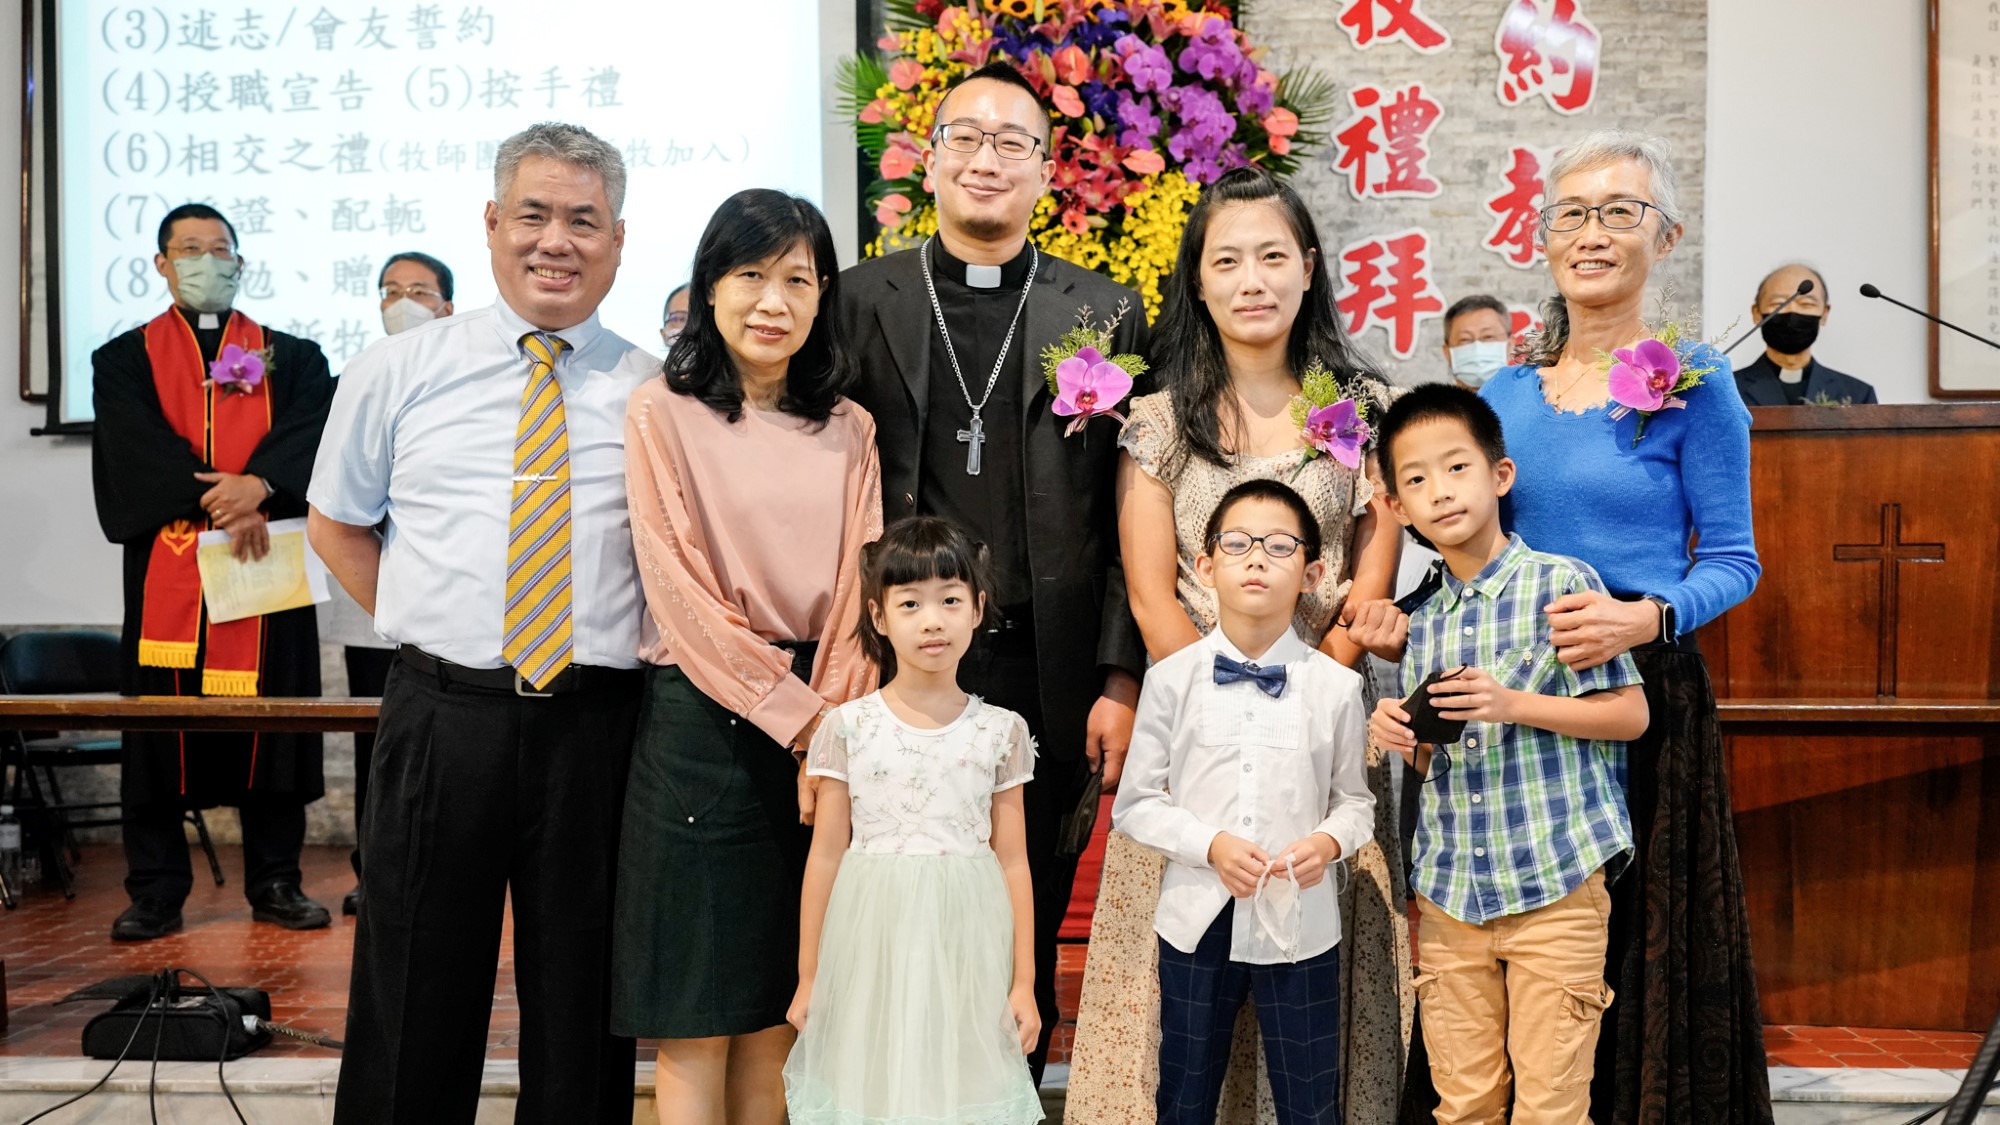 Pastor Huang med familie